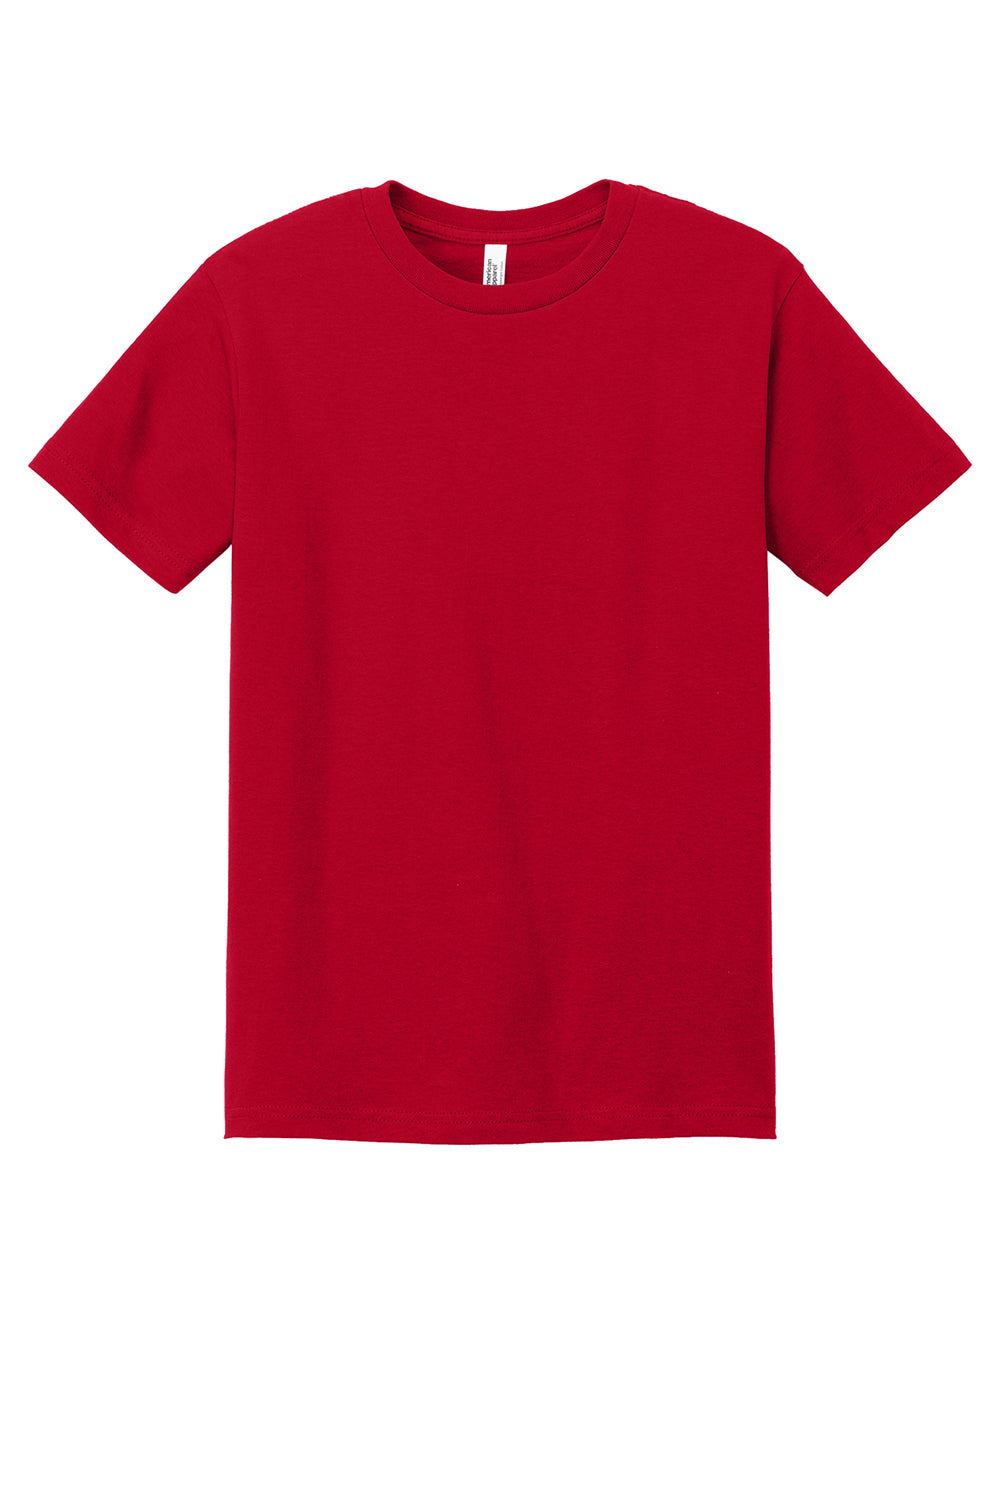 American Apparel 1301/AL1301 Mens Short Sleeve Crewneck T-Shirt Red Flat Front